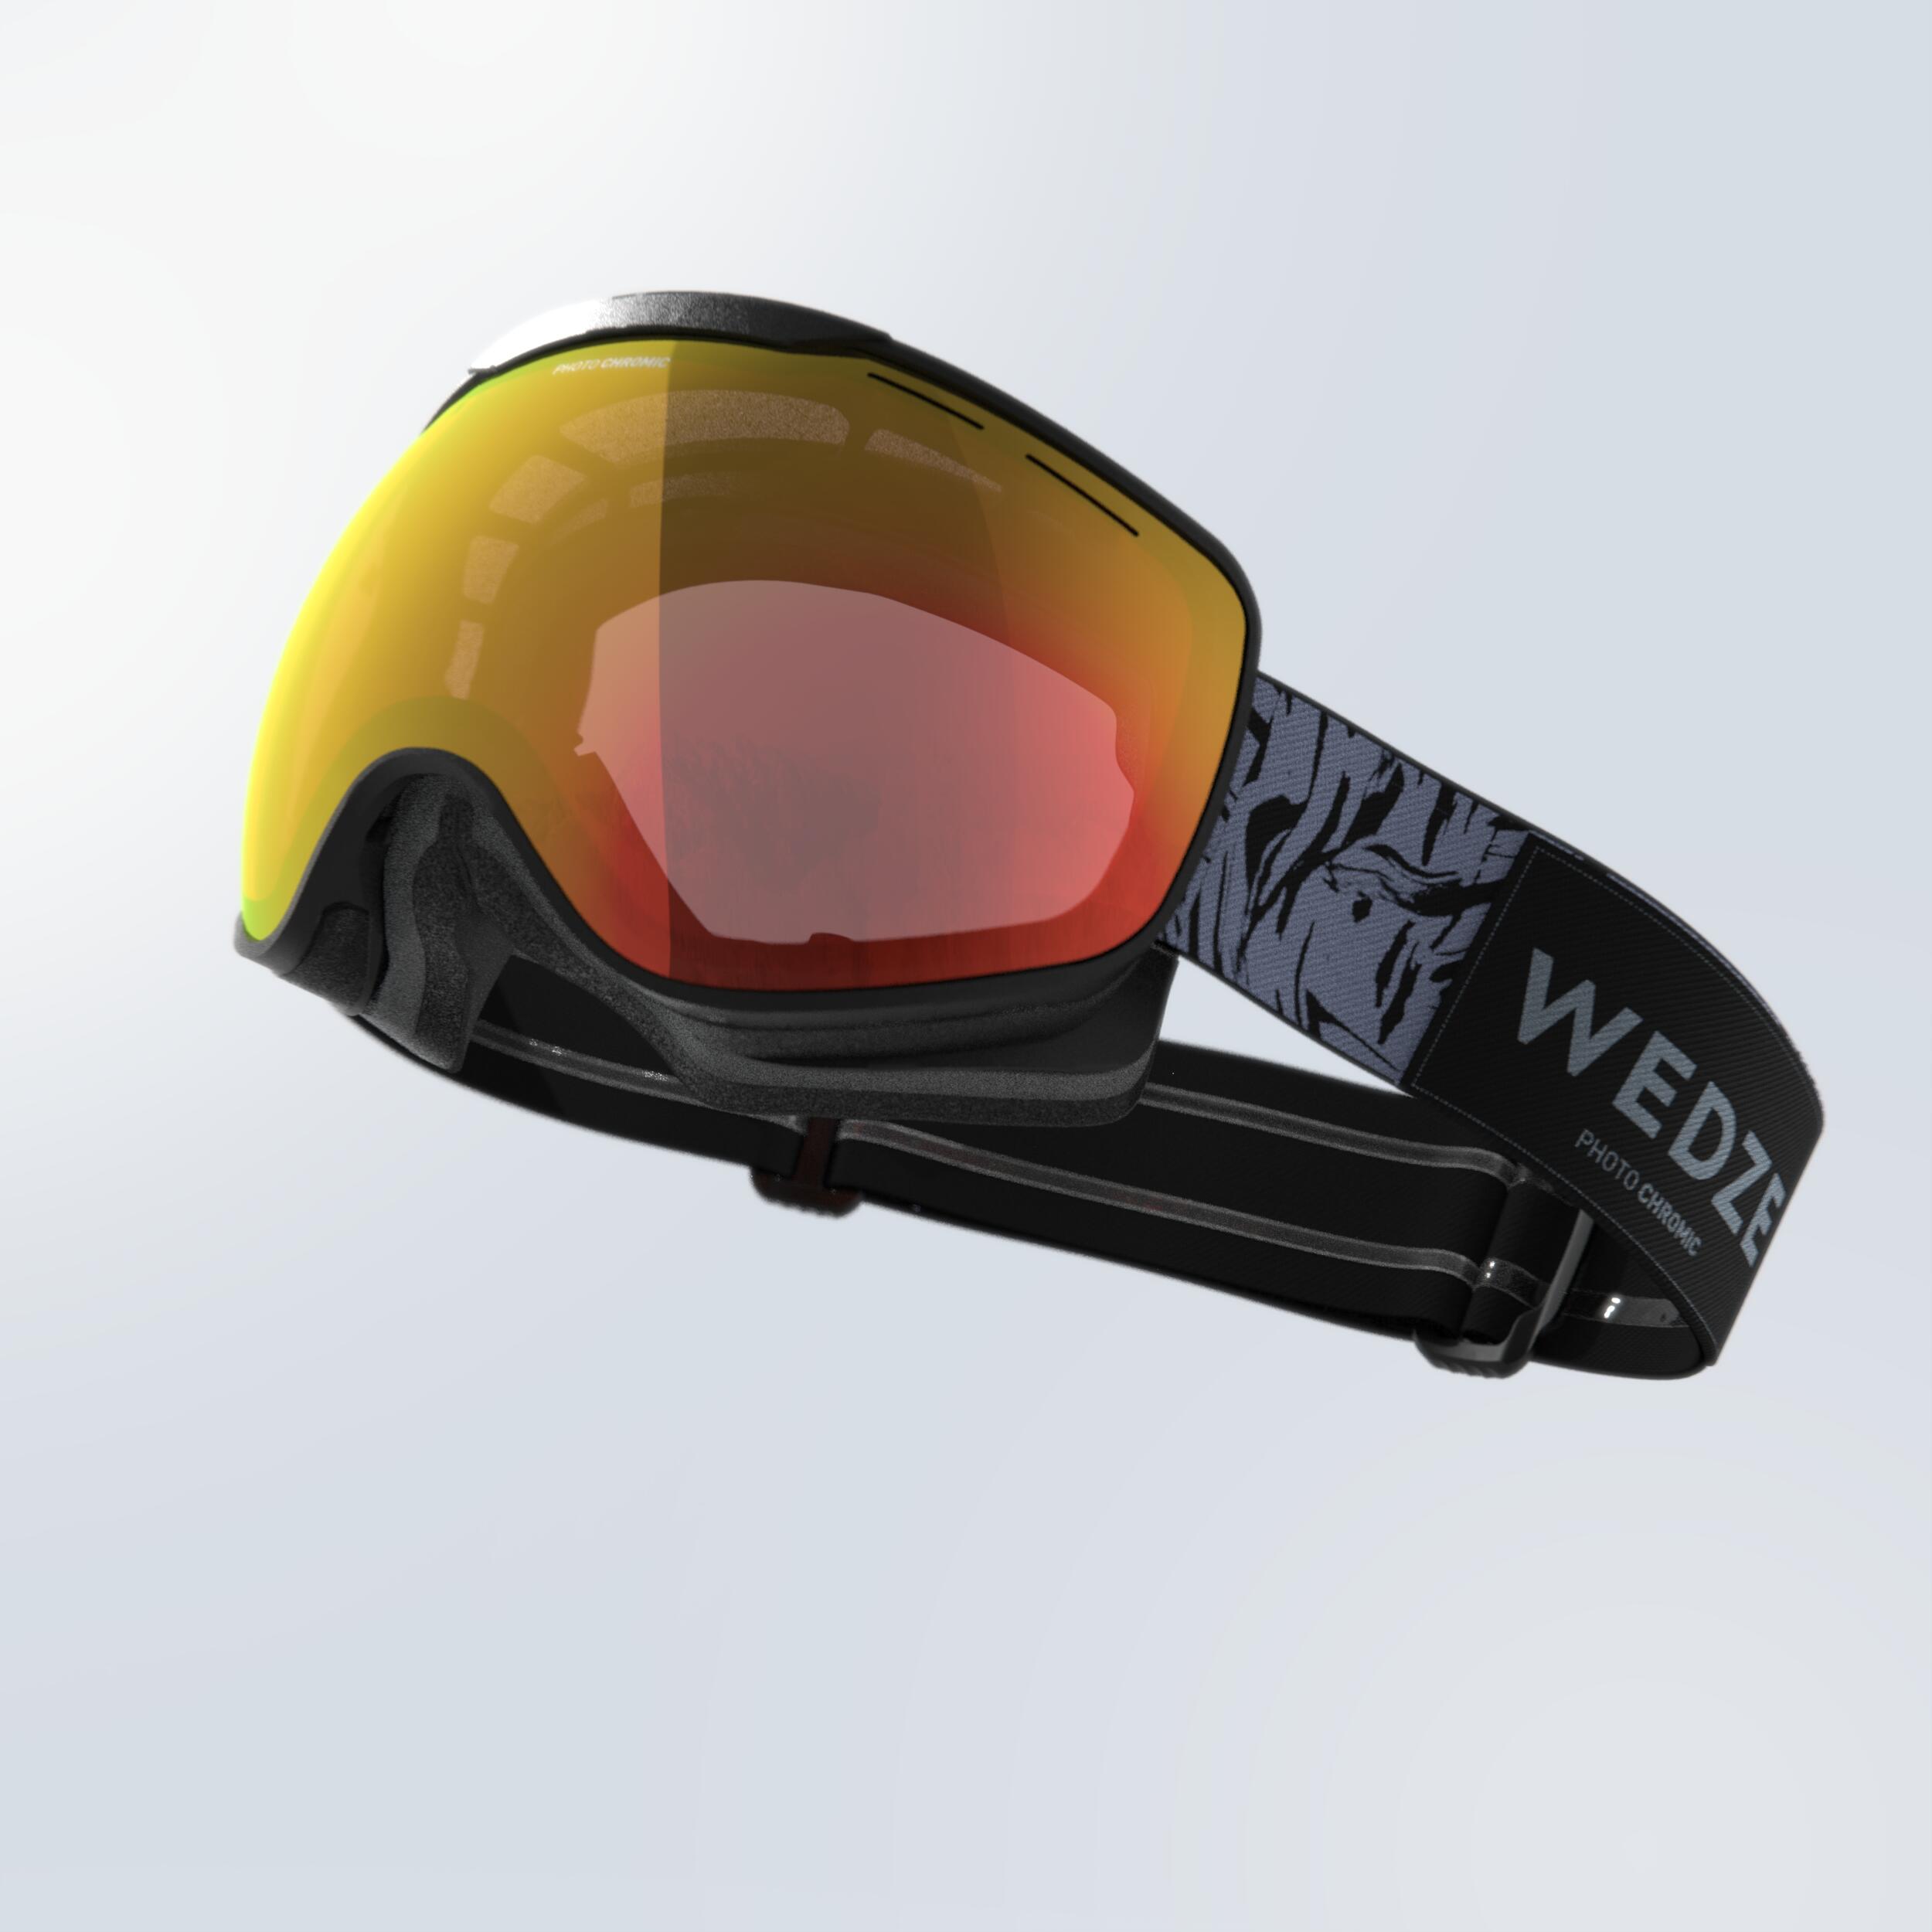 Ochelari schi/snowboard G 900 PH Albastru-Gri Copii/Adulți La Oferta Online decathlon imagine La Oferta Online